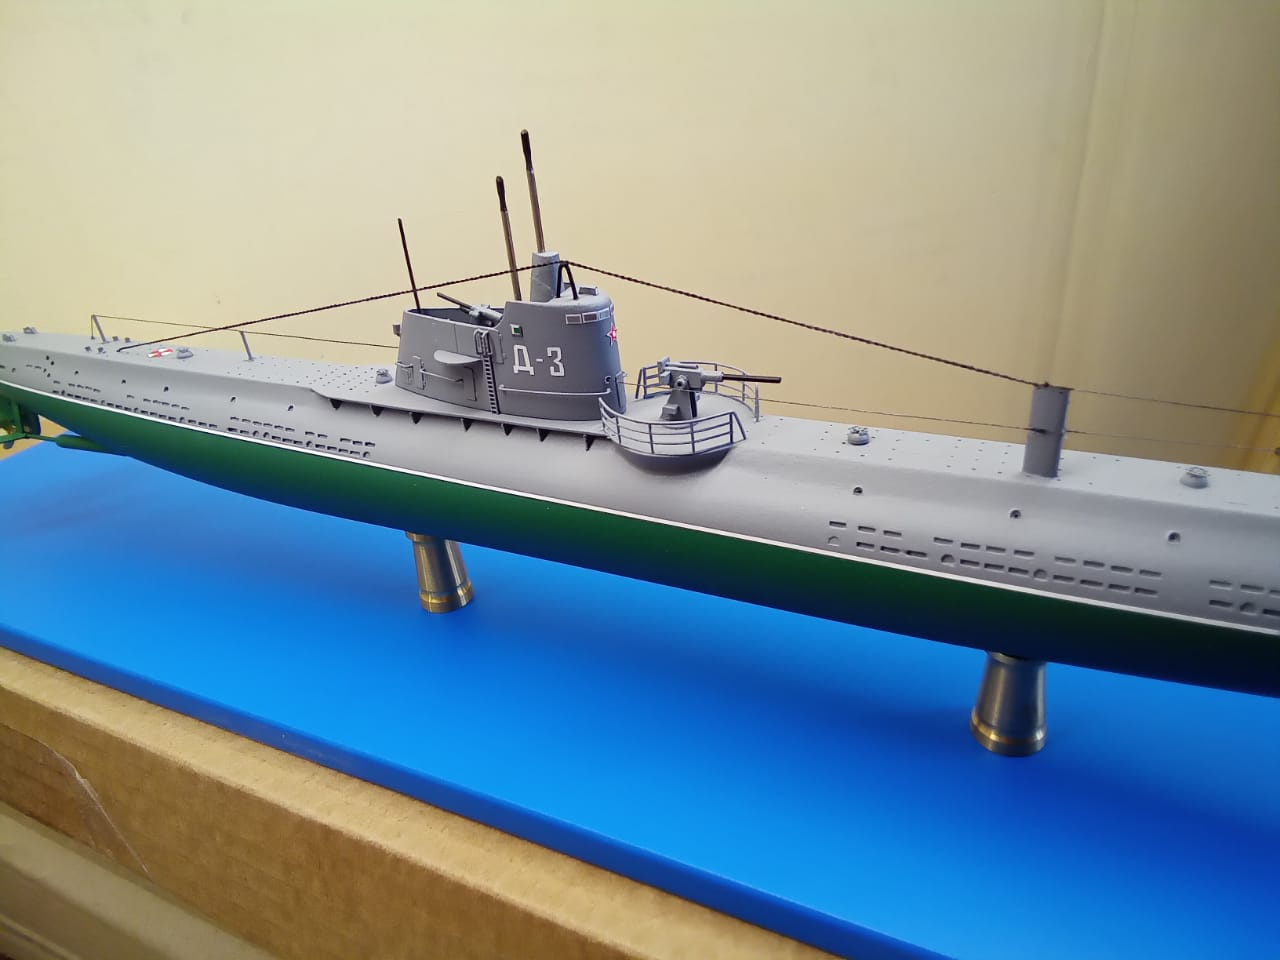 Модель подводной лодки Д-3. Фото: Денис Моисеев